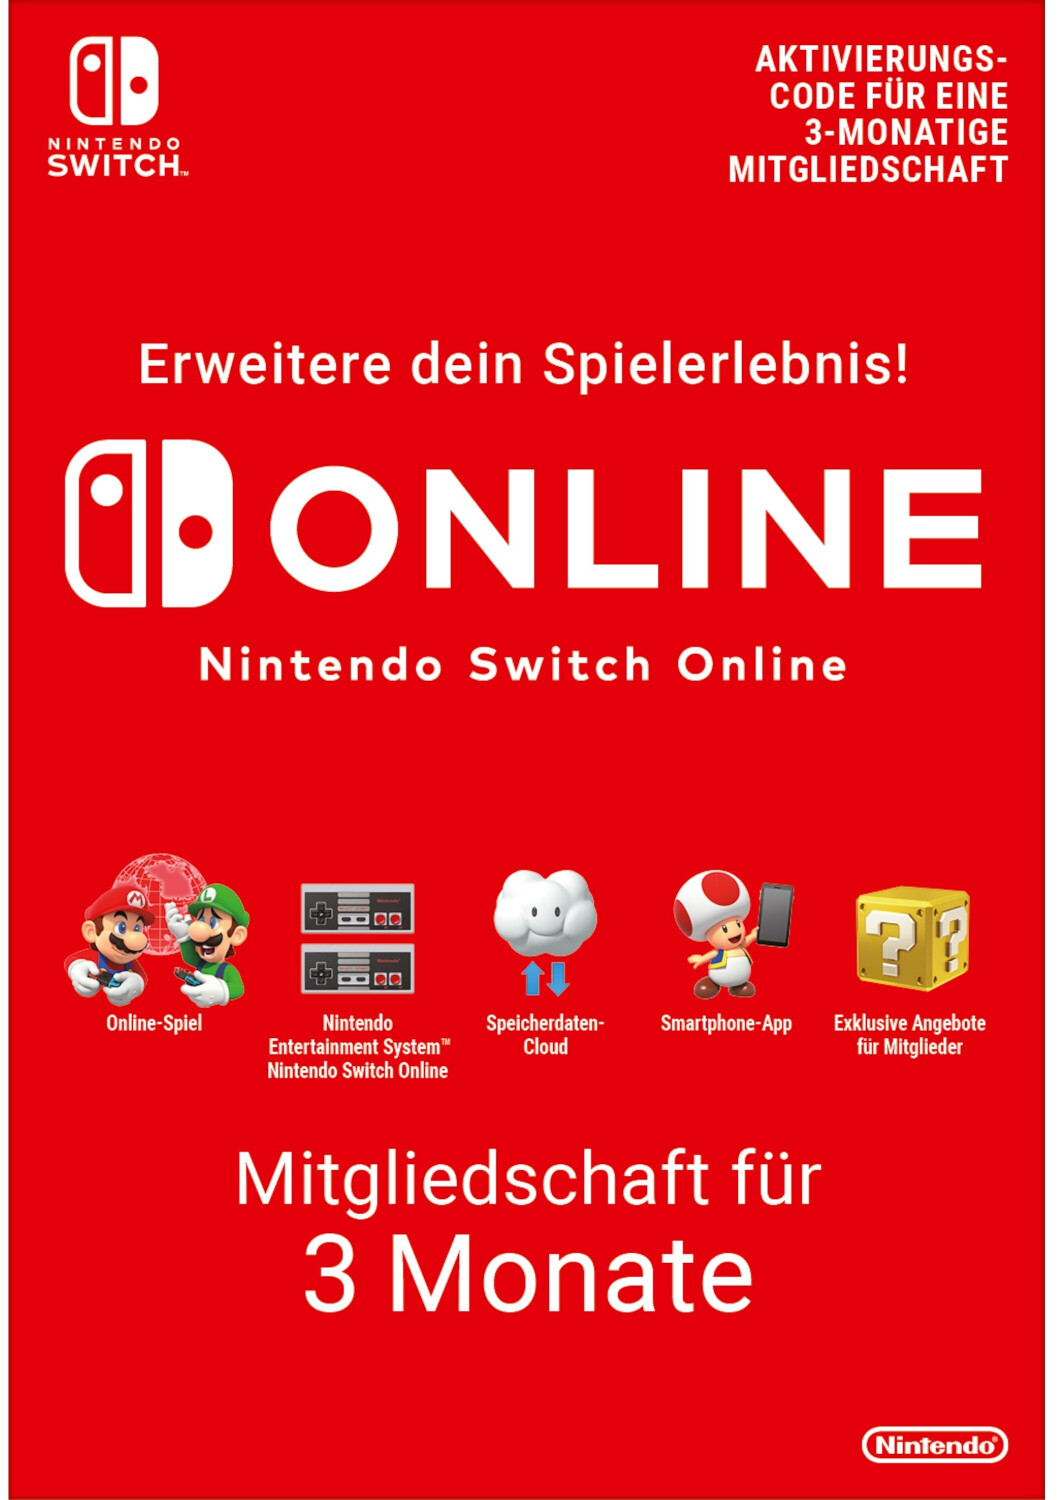 Nintendo Switch Online Mitgliedschaft für 3 Monate ab 7,99 € |  Preisvergleich bei